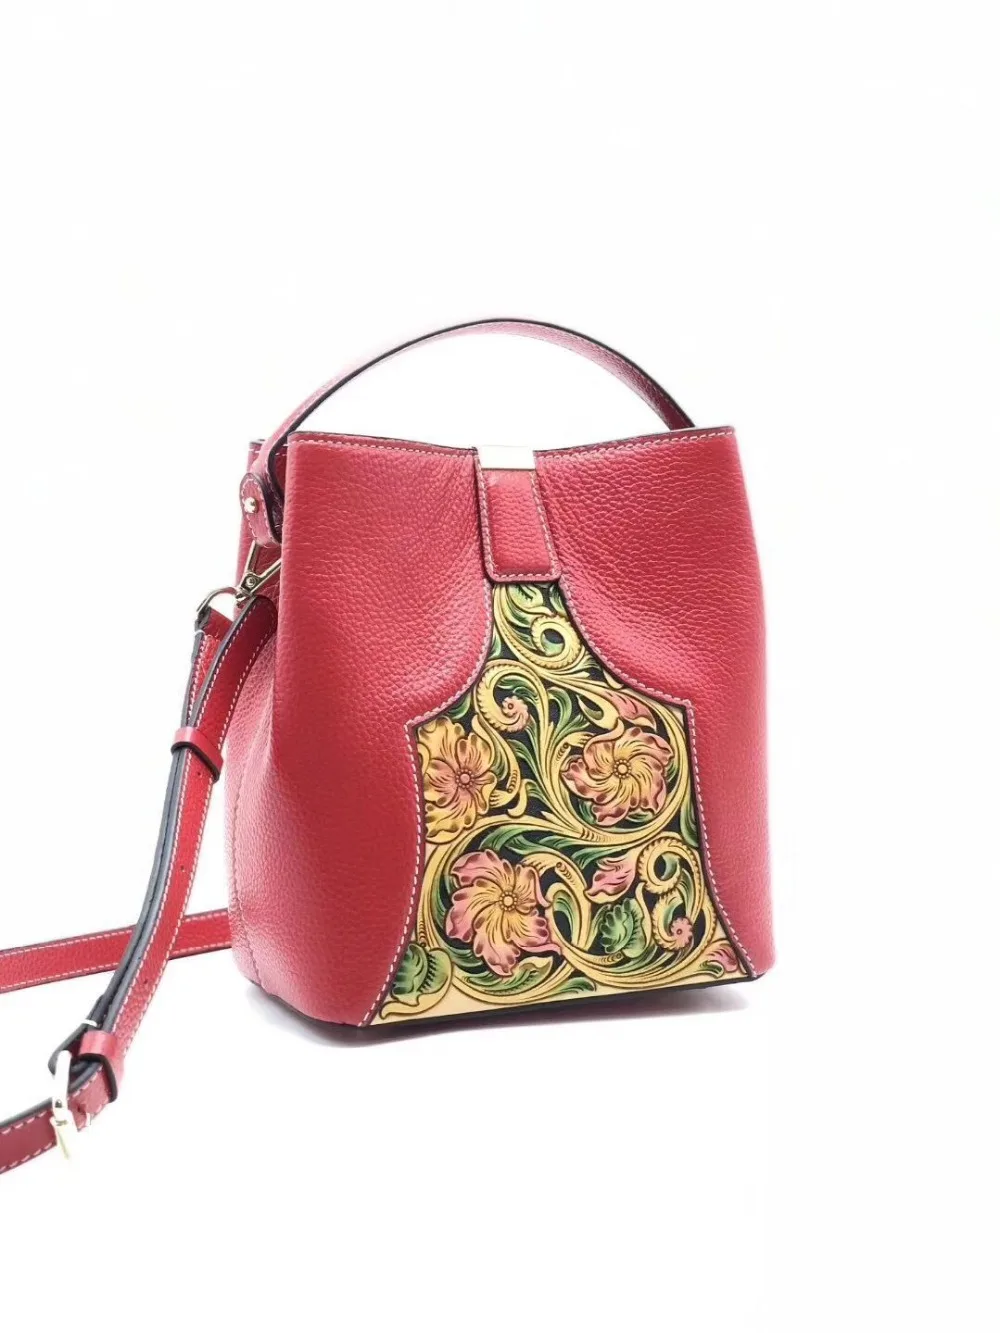 SUWERER новые женские сумки из натуральной кожи роскошные сумки известный бренд ручной работы роскошная кожаная сумка сумки на плечо